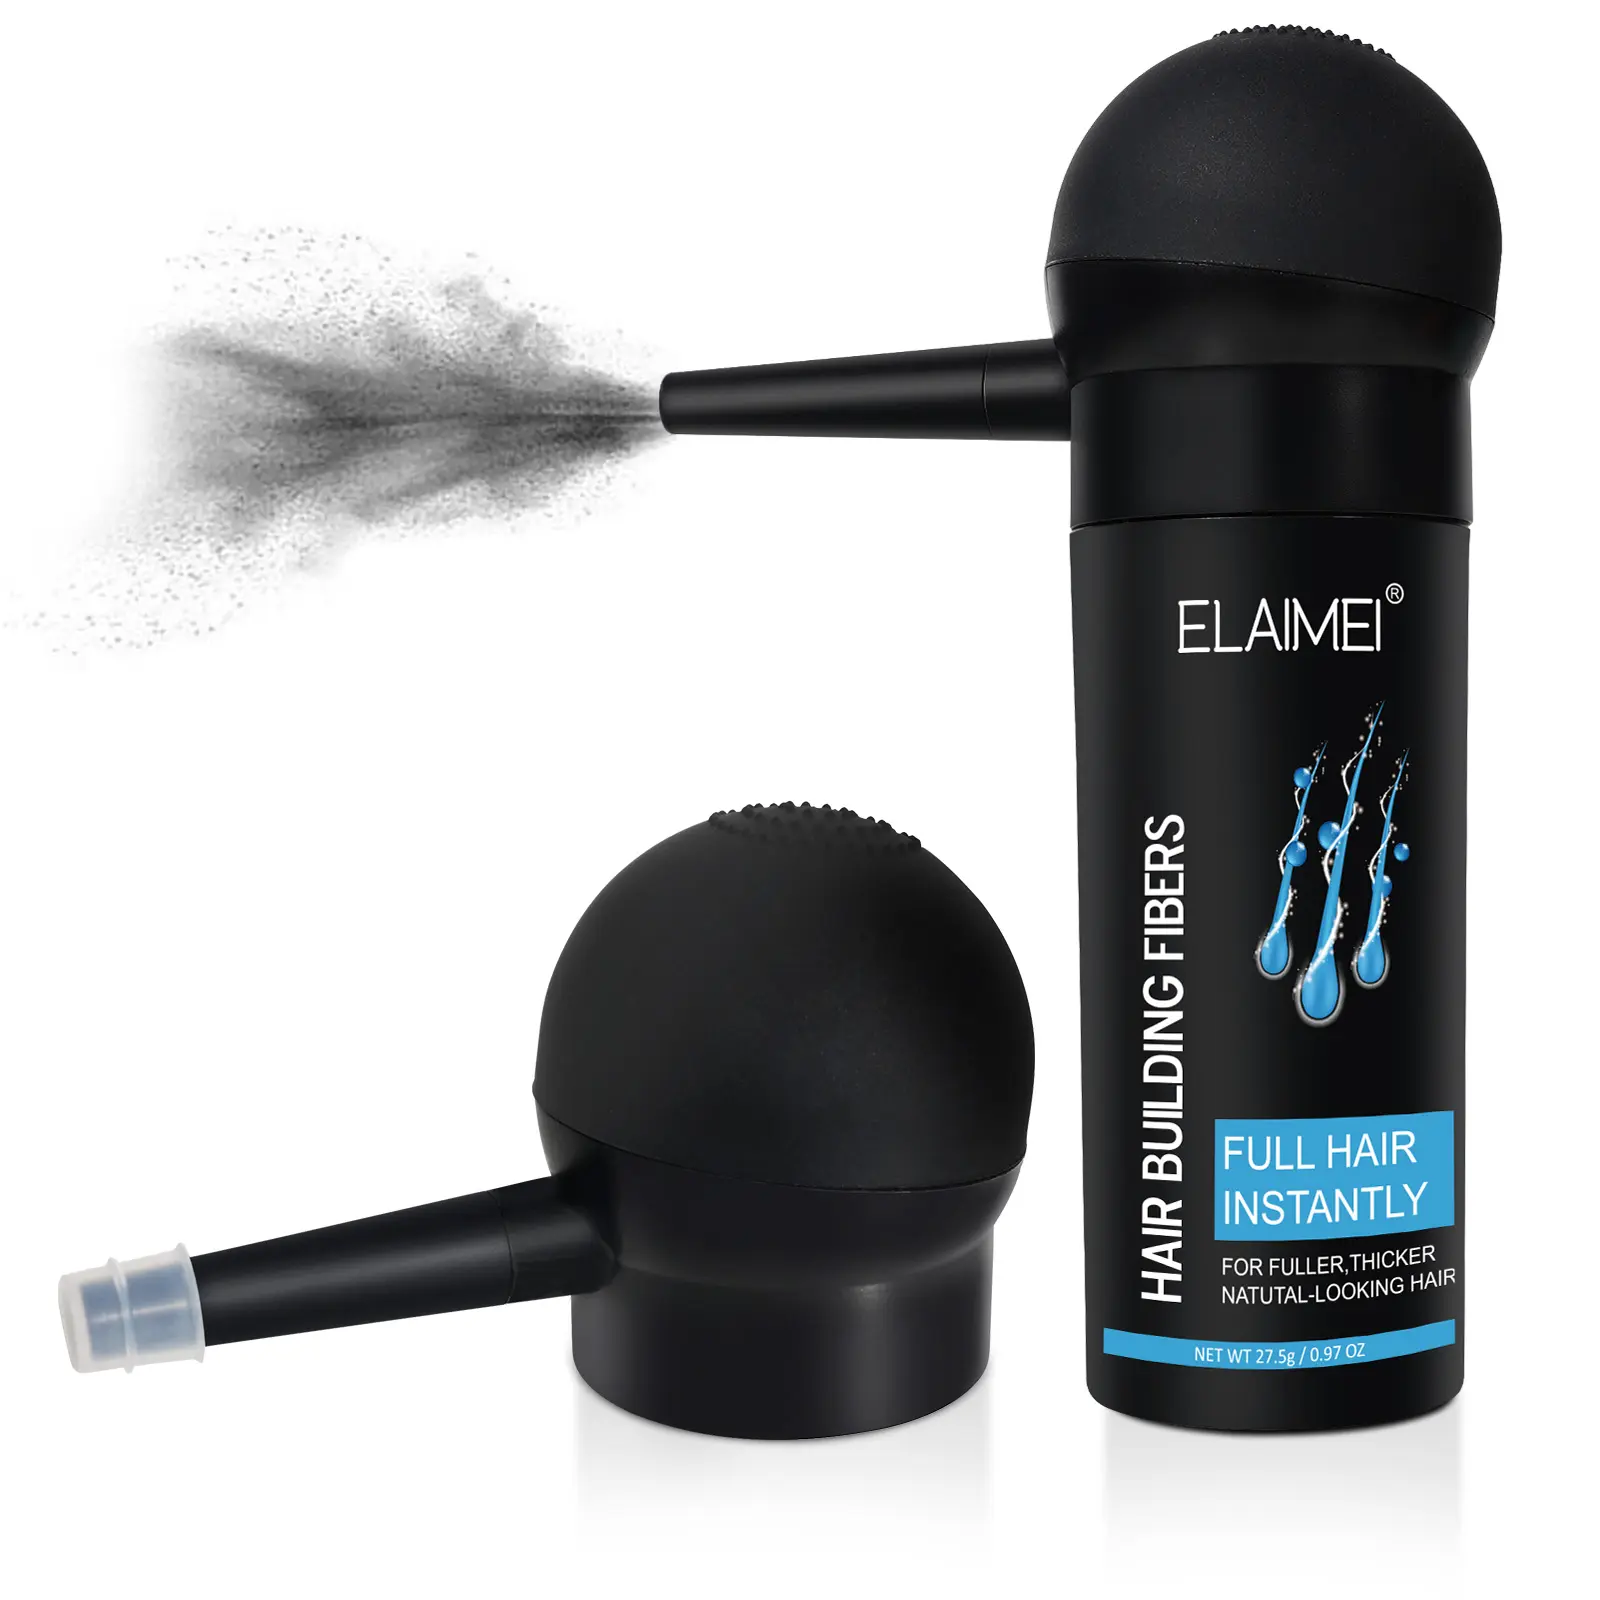 ELAIMEI Private Label Haarausfall behandlung Gebäude Fasern Sprüh pulver Wachstum Haar Perücke Faser mit Düse